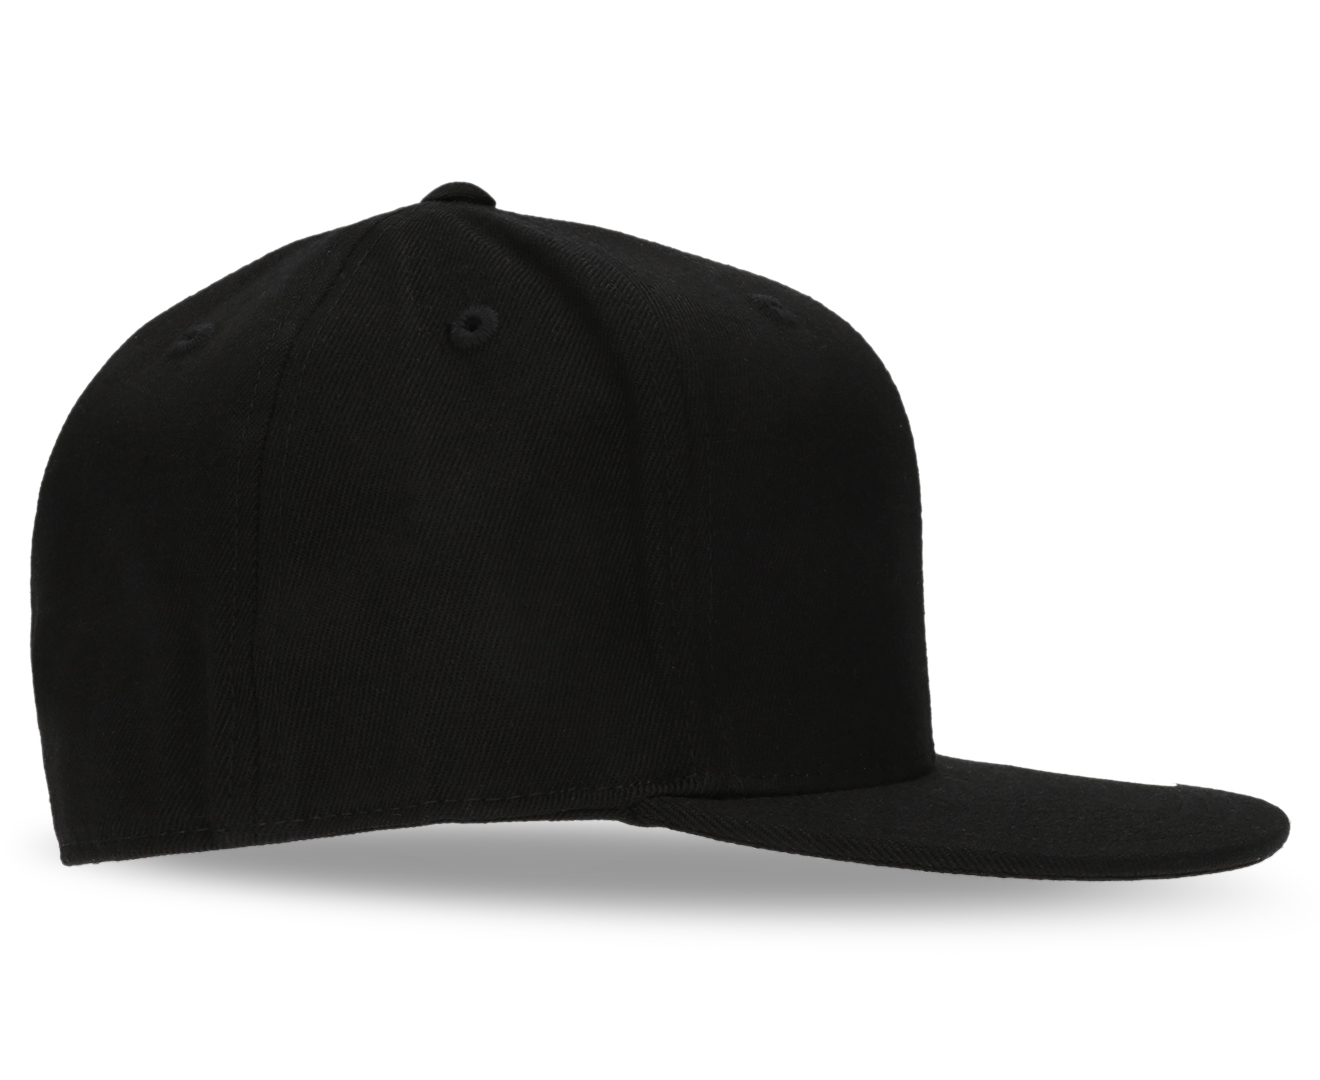 Flexfit Premium 210 Fitted Strapback Cap - Black | Catch.com.au